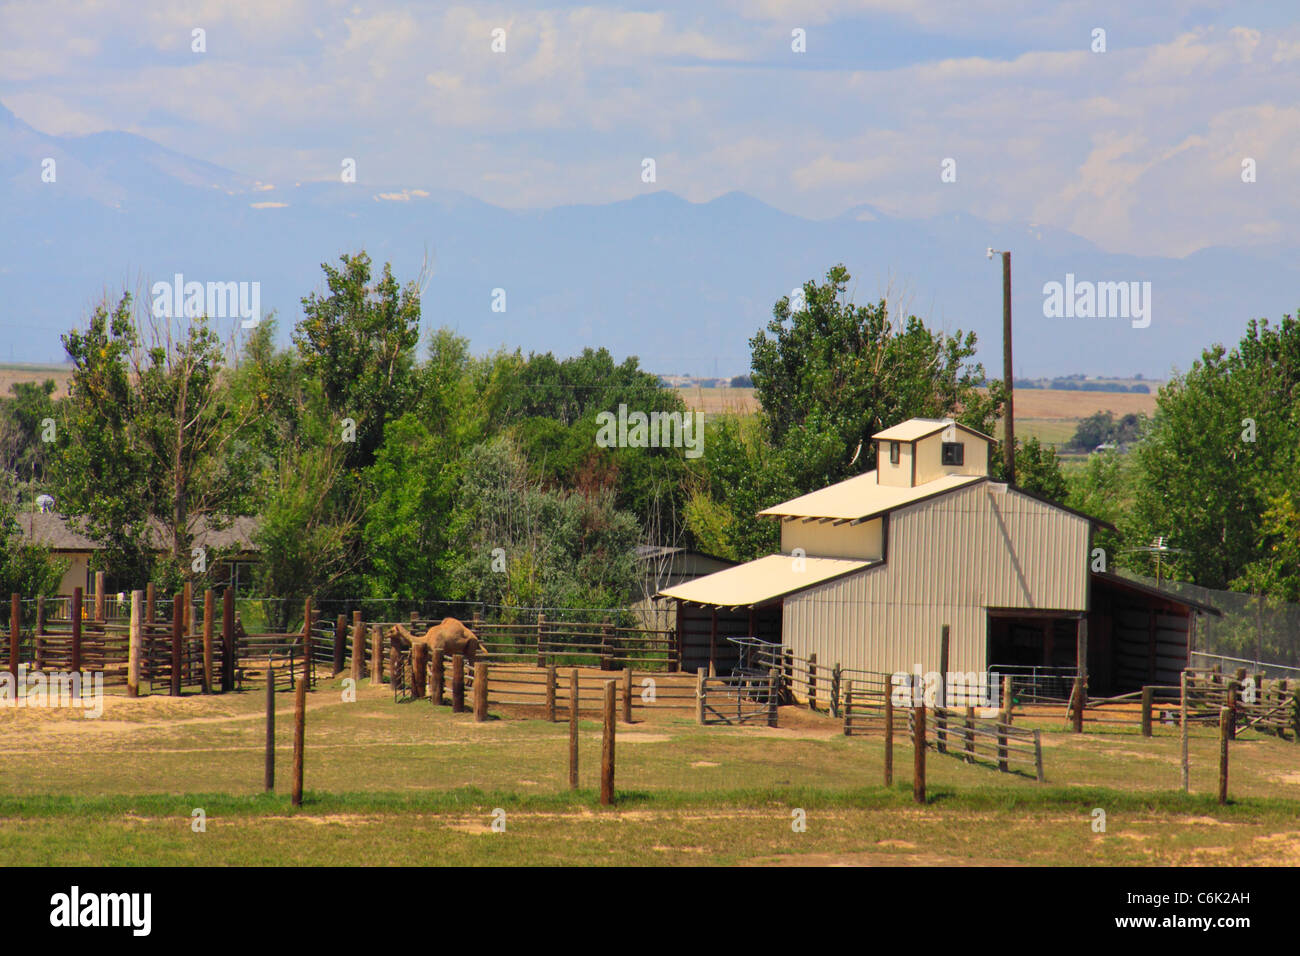 Cammello all'animale selvatico Santuario, Denver, Colorado, STATI UNITI D'AMERICA Foto Stock